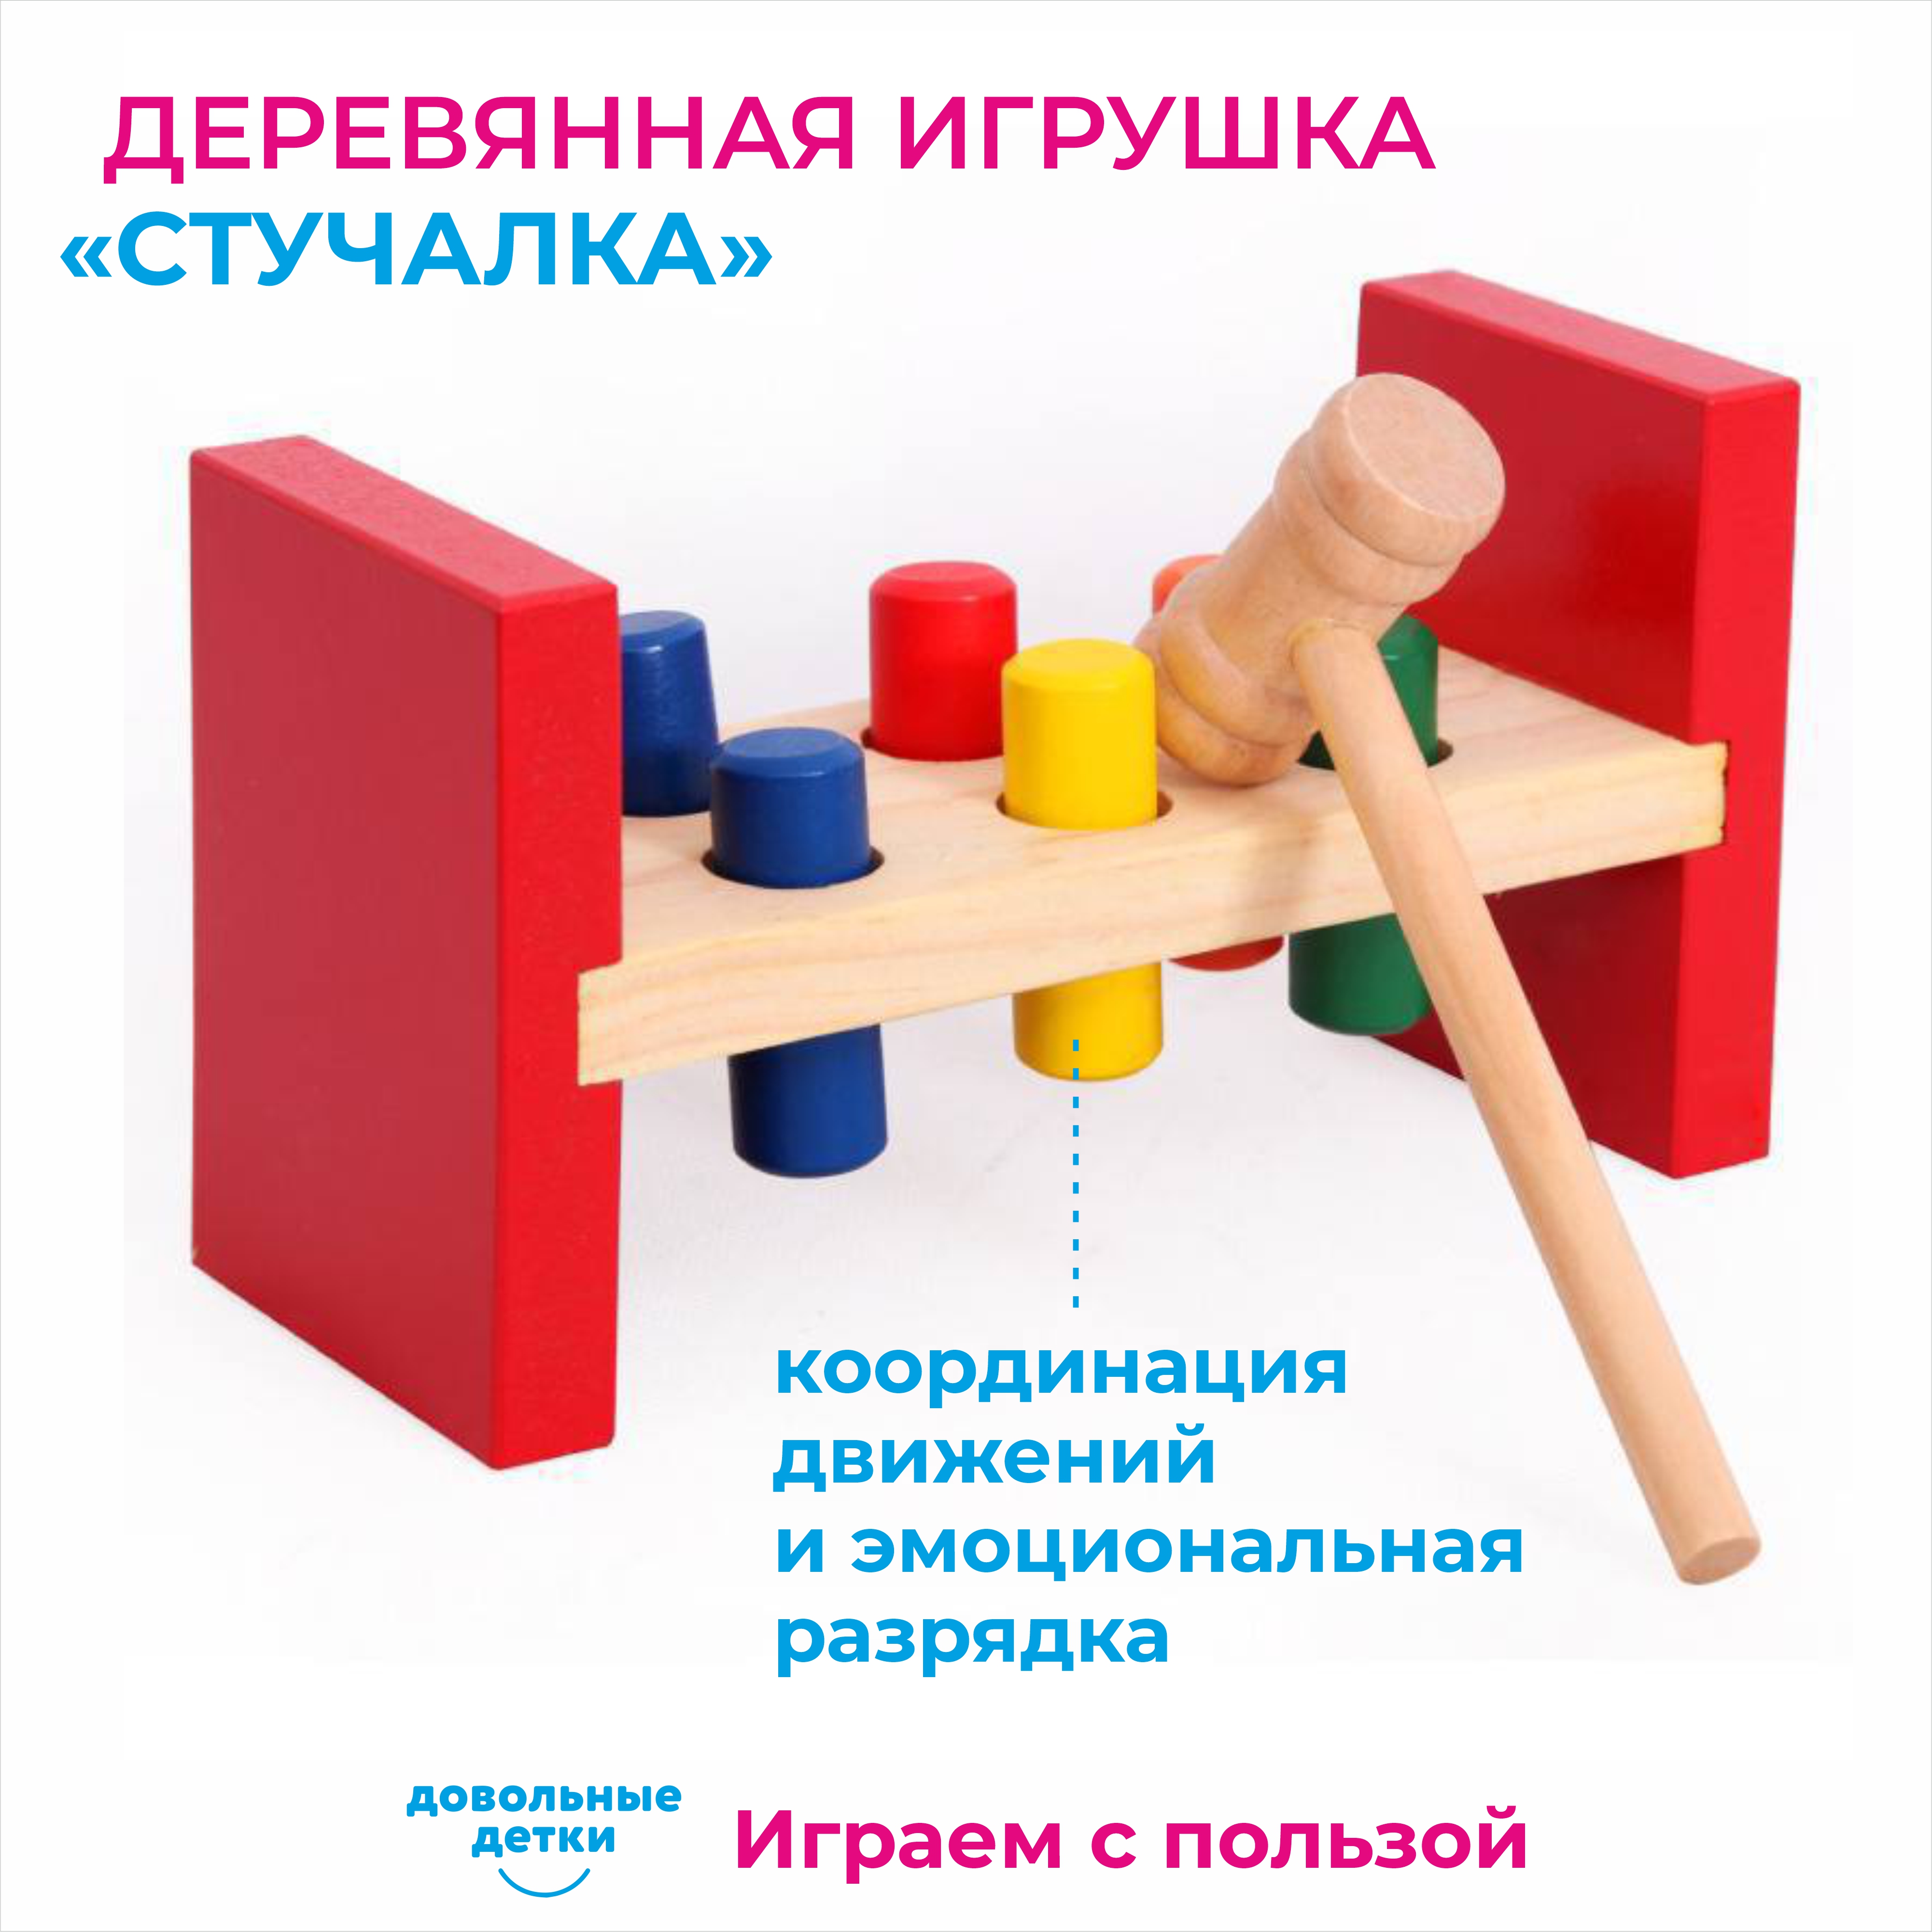 Развивающая детская игра Довольные детки Сортер деревянный стучалка по методике Монтессори - фото 1